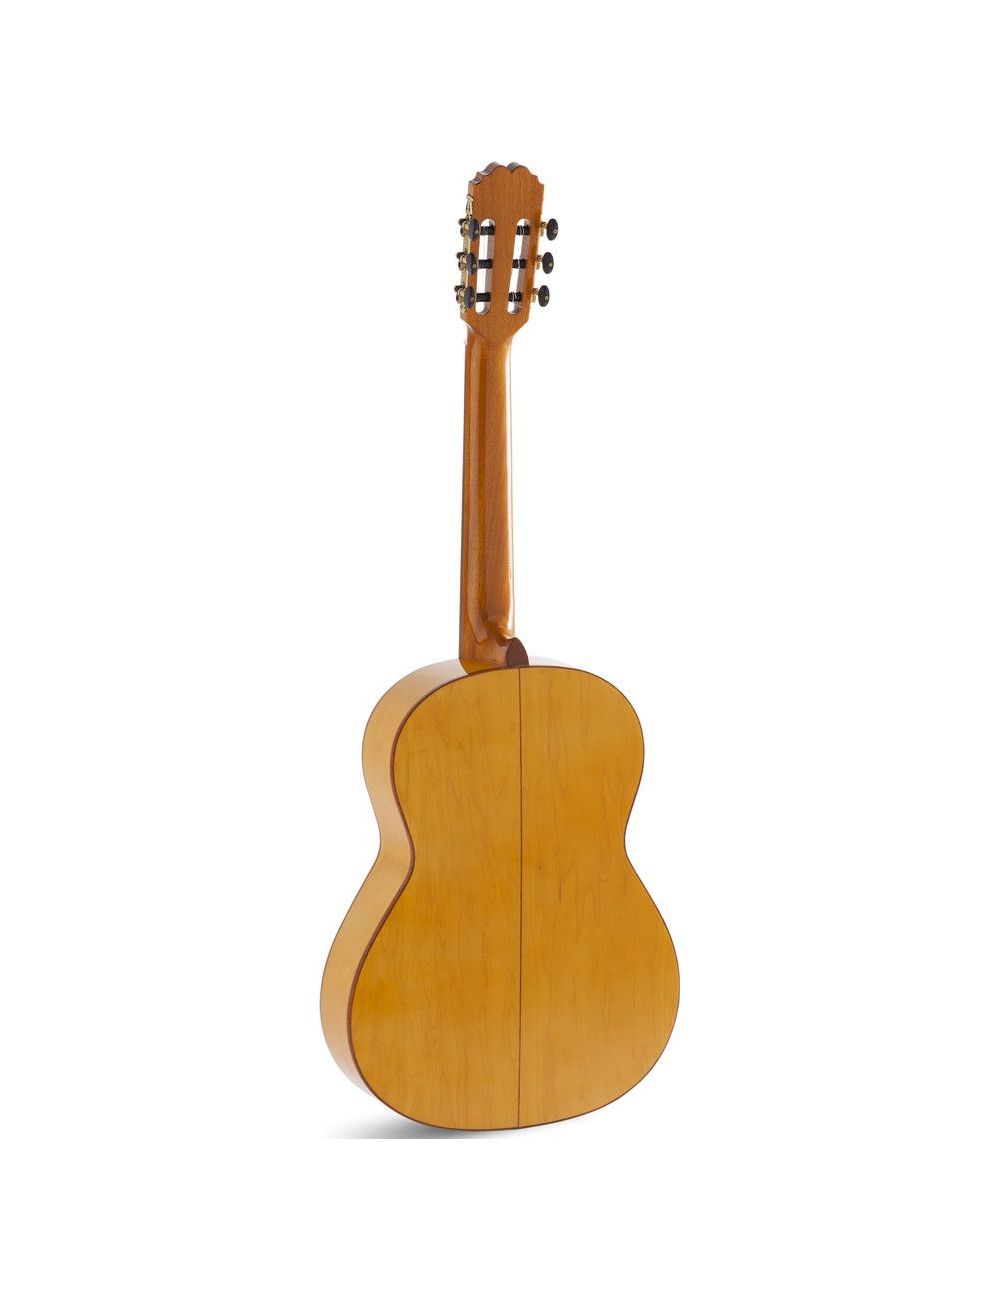 Admira Triana 3/4 Flamenco guitar ADM084034 Special sizes